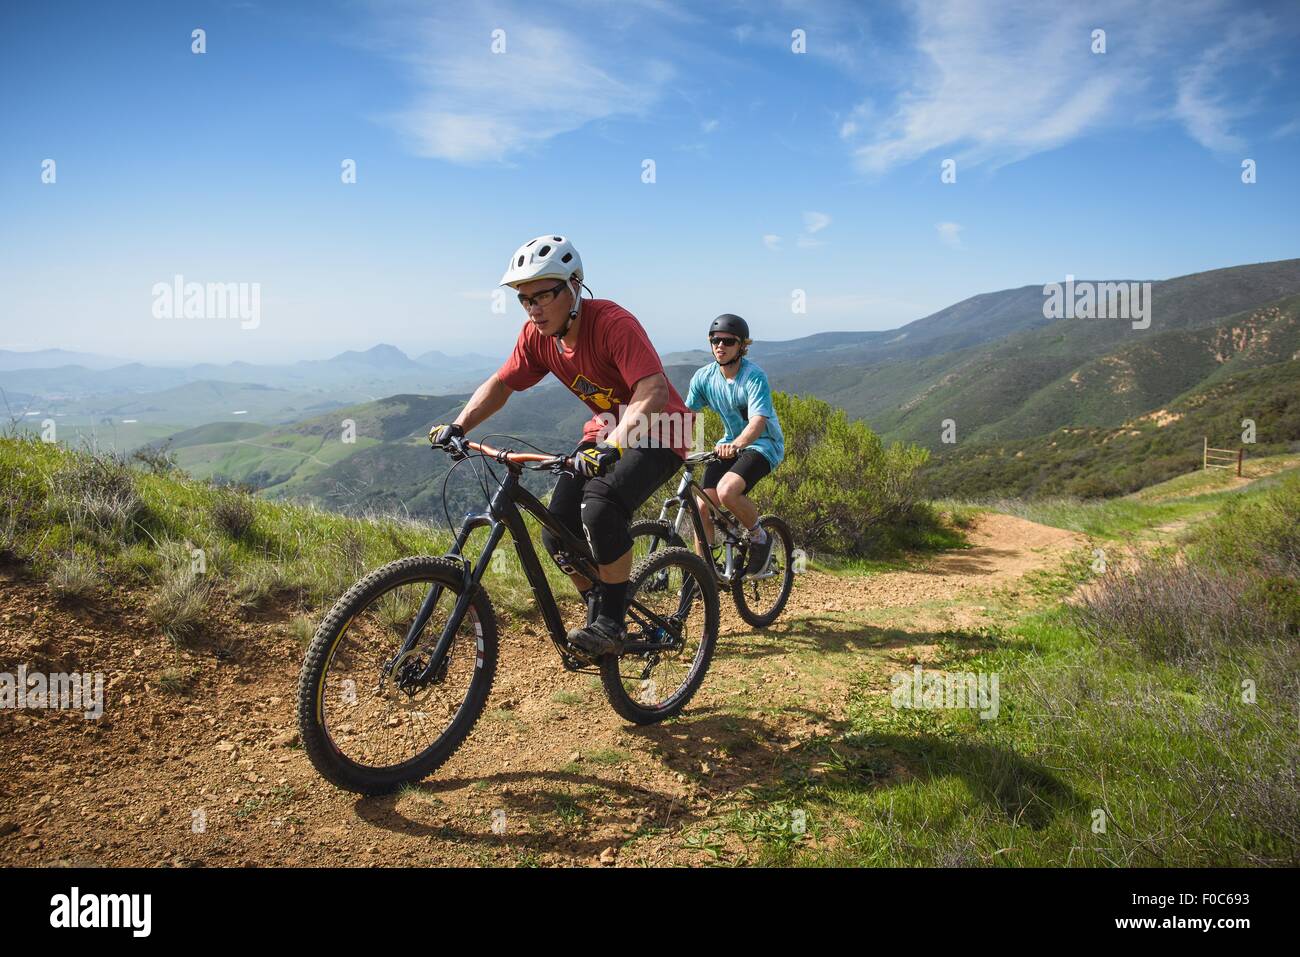 Cyclists mountain biking, San Luis Obispo, California, United States of America Stock Photo